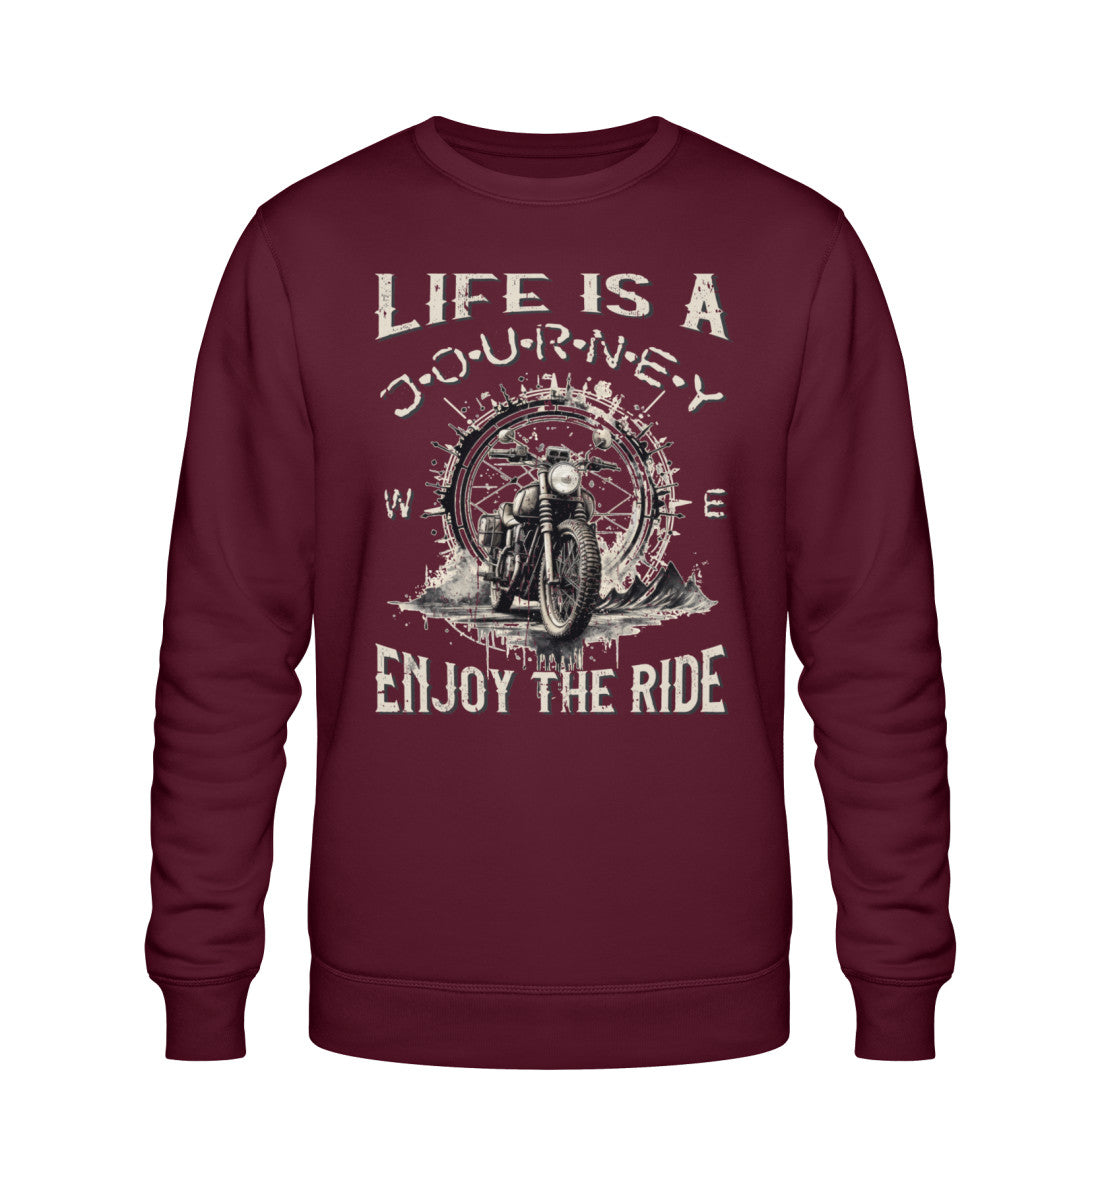 Ein Biker Sweatshirt für Motorradfahrer von Wingbikers mit dem Aufdruck, Life Is A Journey - Enjoy The Ride - in burgunder weinrot.